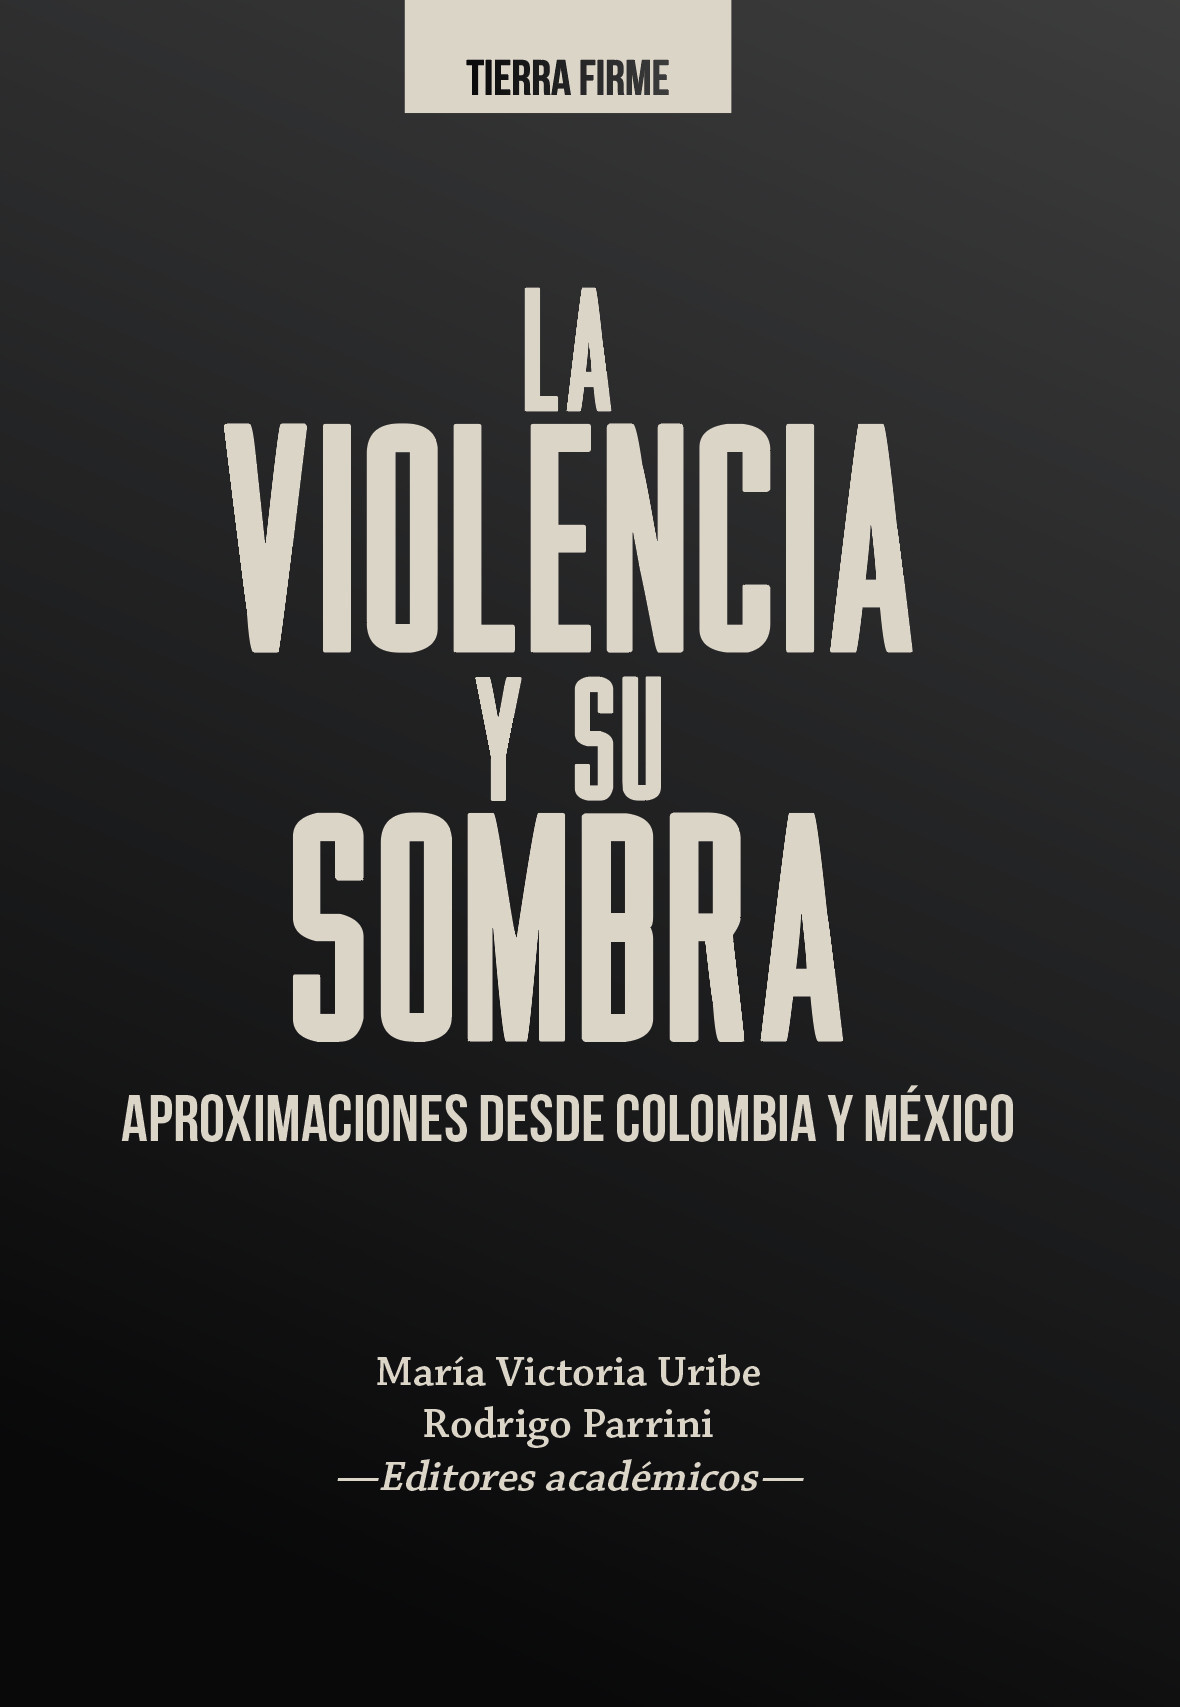 Imagen de portada del libro La violencia y su sombra